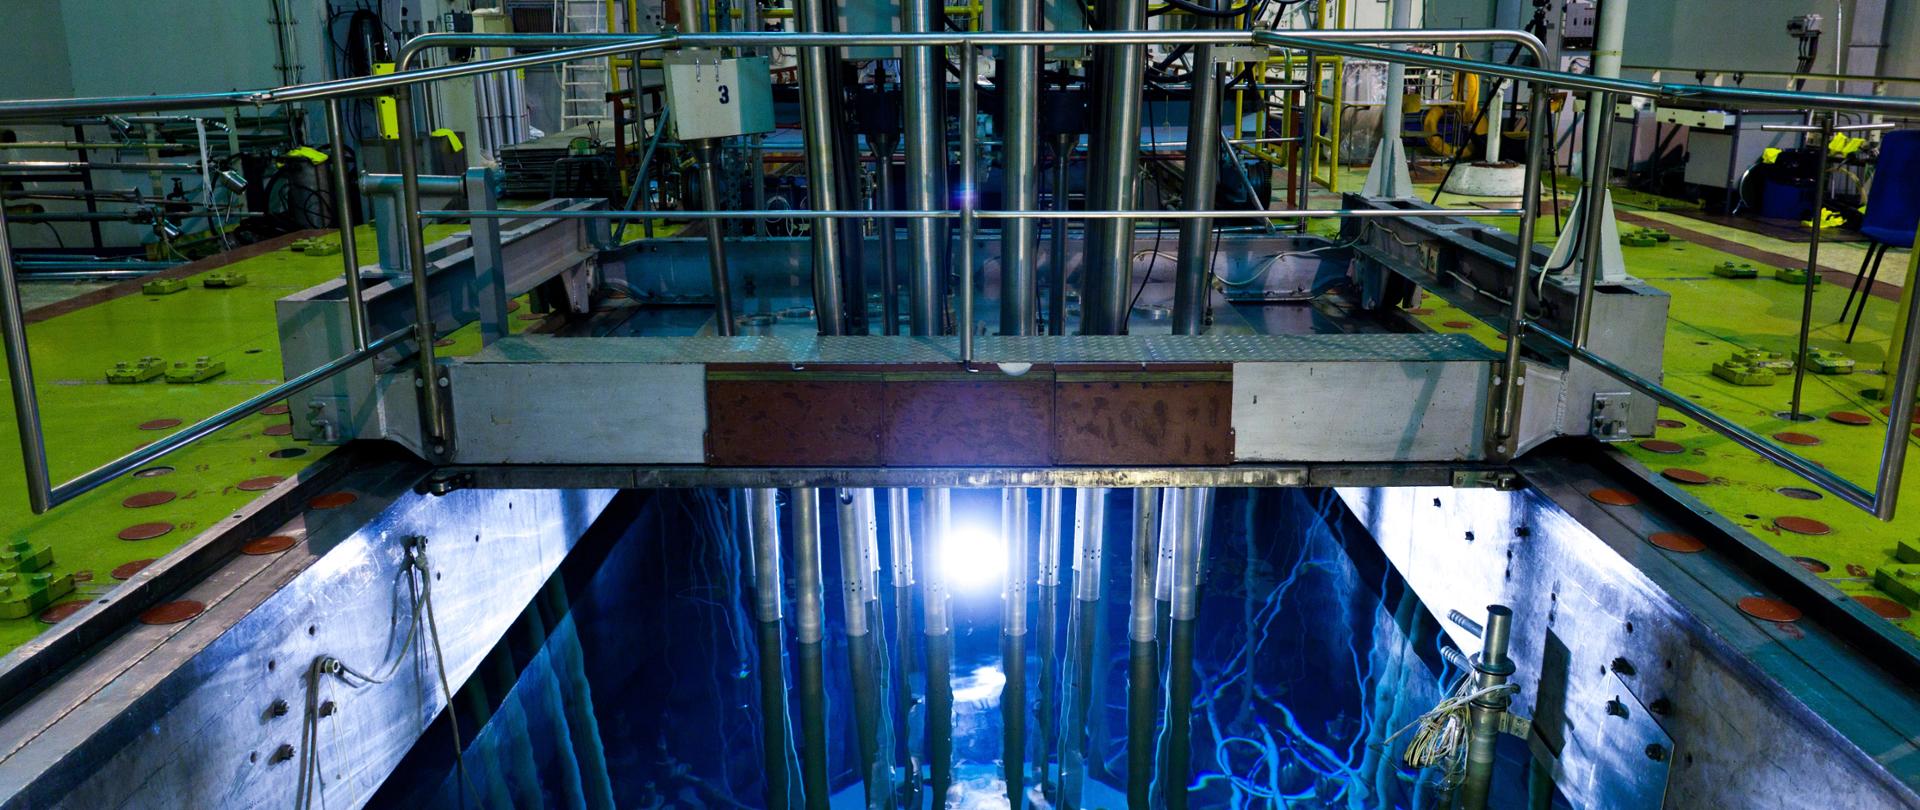 Zdjęcie przedstawia basen reaktora badawczego Maria. Na zdjęciu widać basen, w którym znajduje się reaktor wraz z instalacjami technicznymi